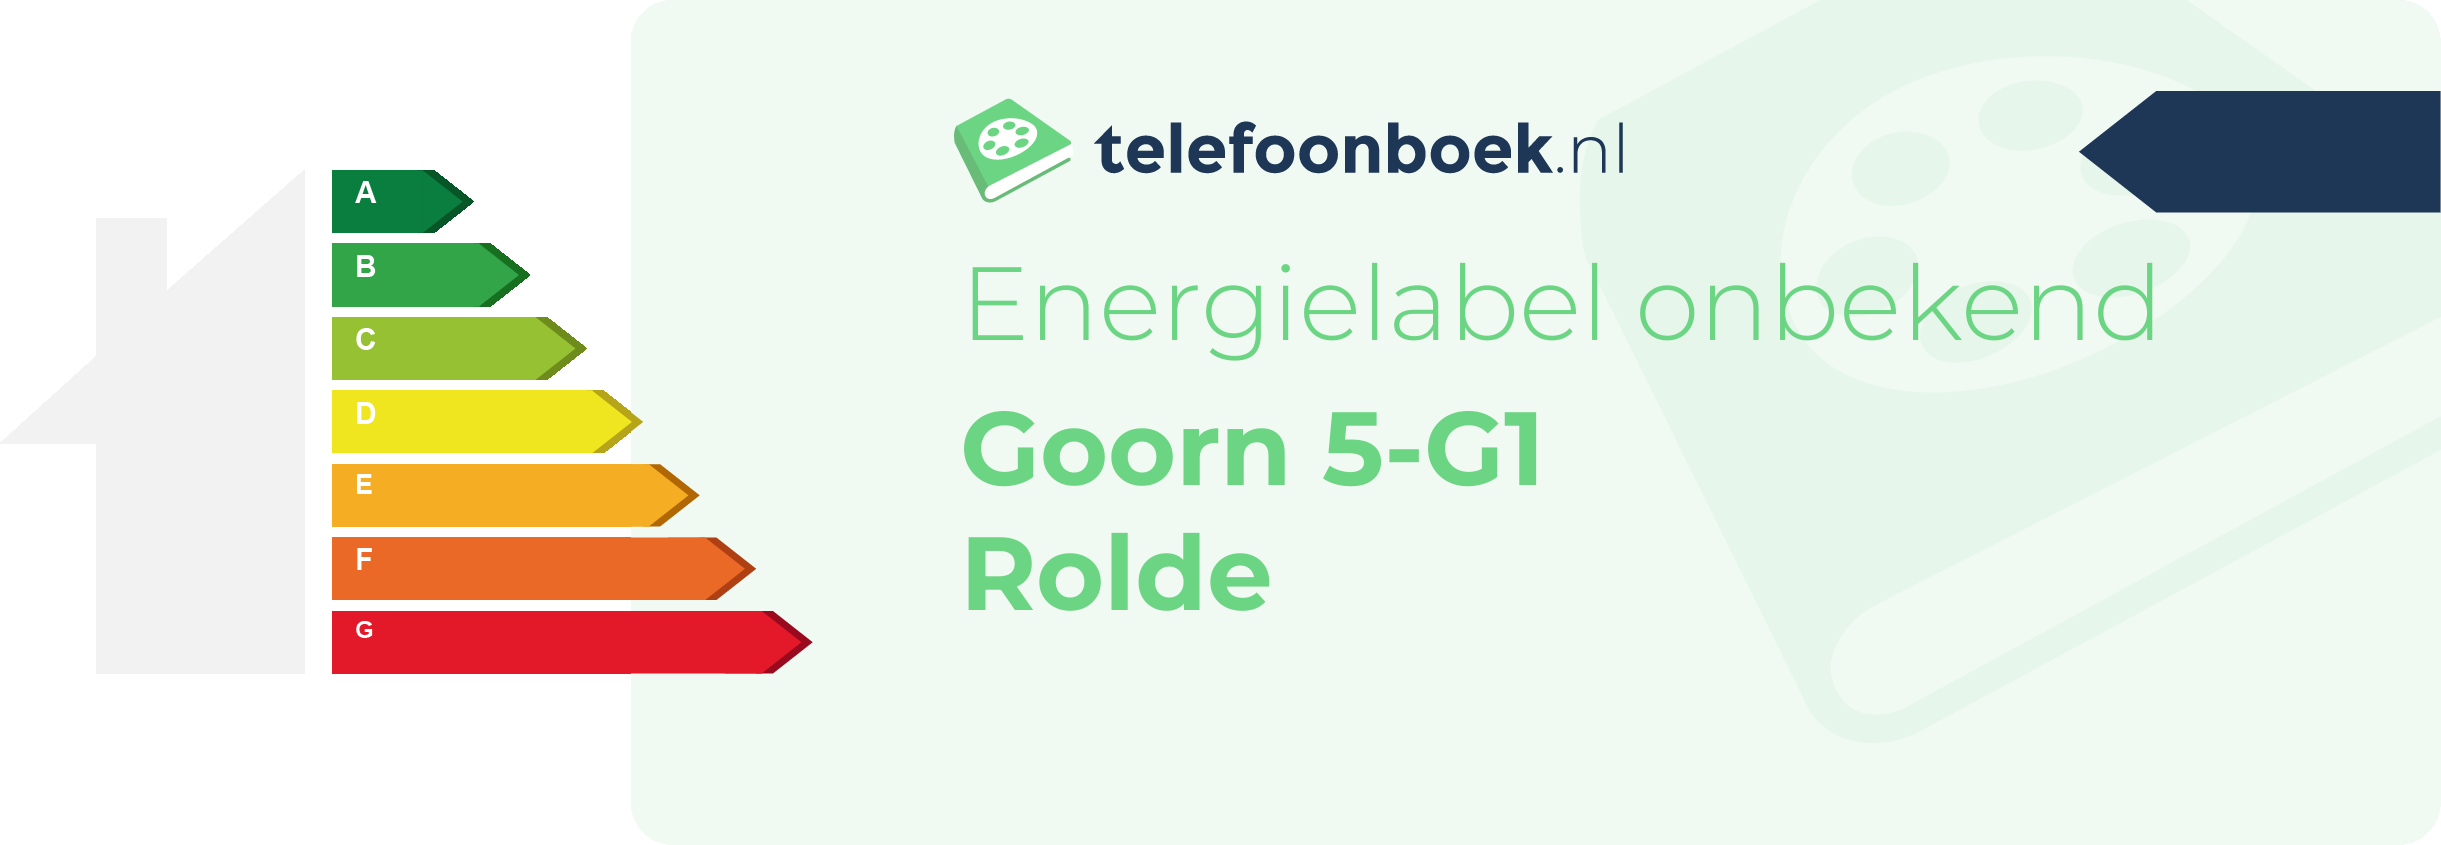 Energielabel Goorn 5-G1 Rolde